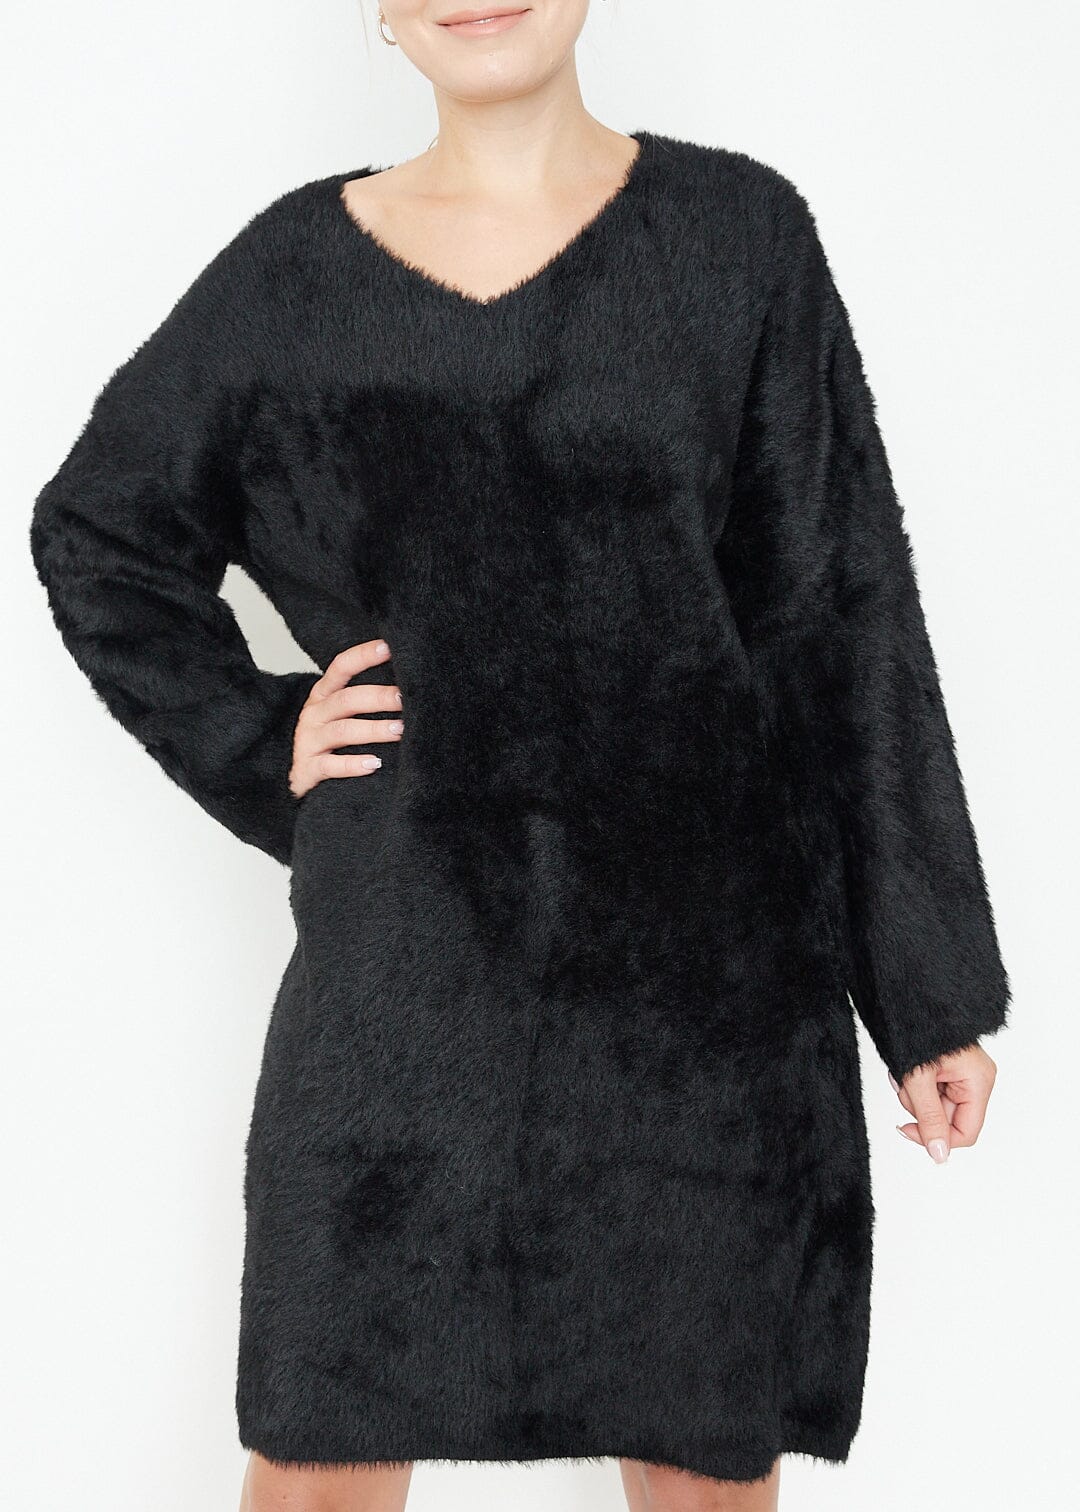 Fuzzy Sweater Dress Dresses Kate Hewko 